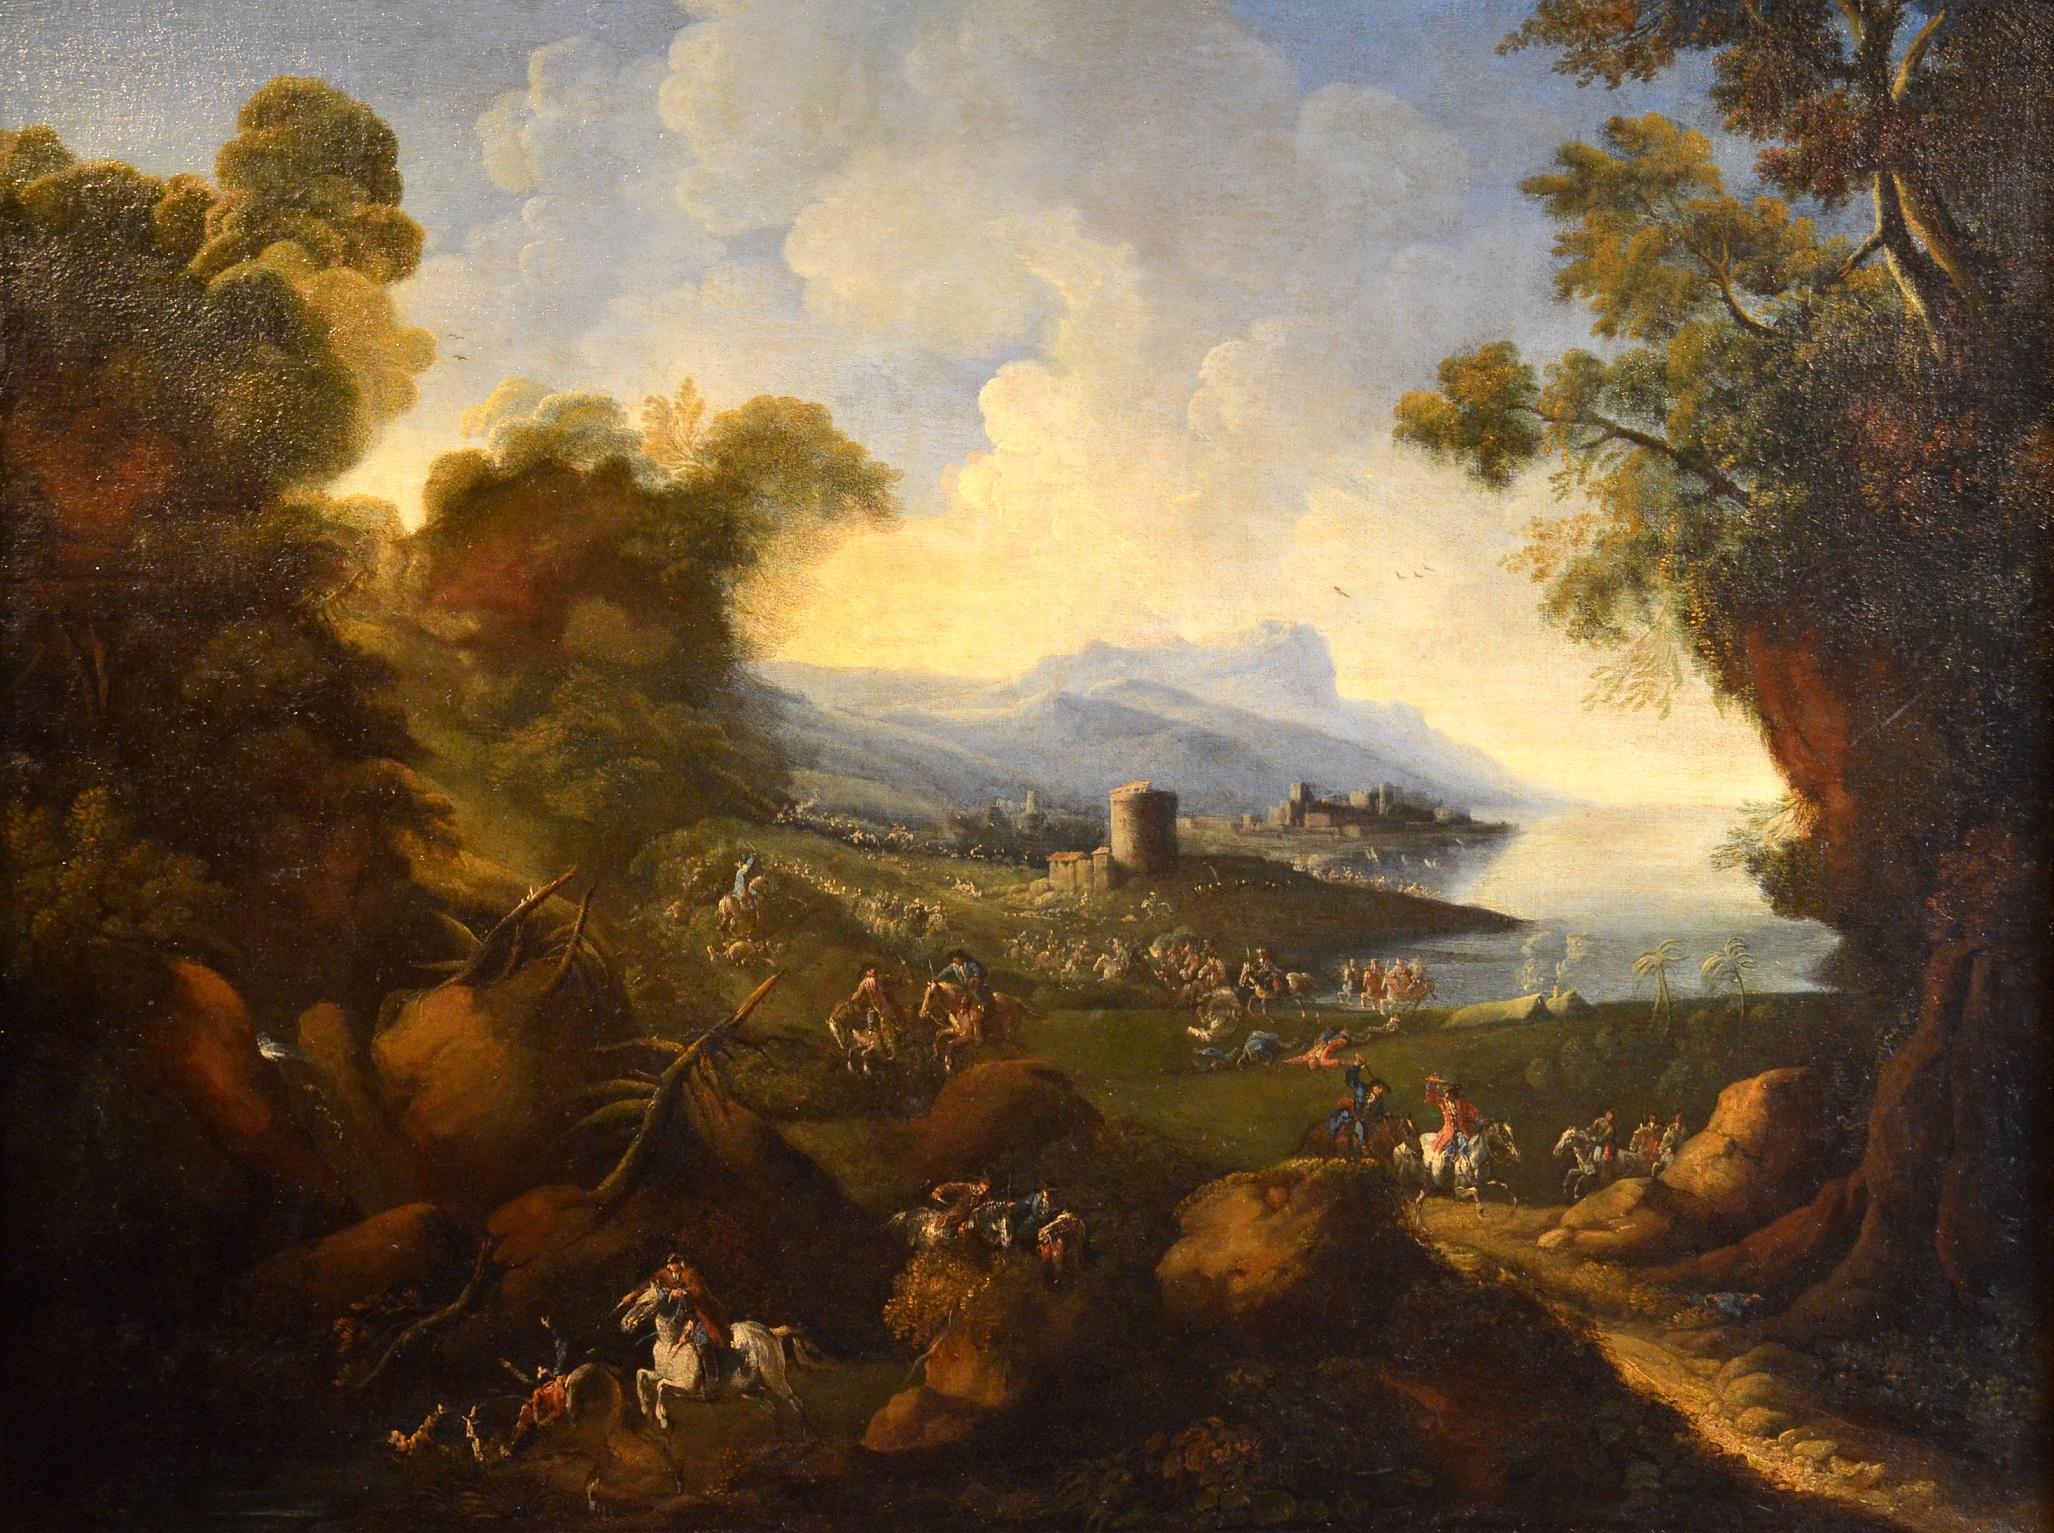 Landscape Painting Pandolfo Reschi known as Monsù Pandolfo (Danzica 1643 - Florence 1699), attributable - Paysage côtier Chevaux Peinture 17ème siècle Huile sur toile Forêt Art ancien Maître